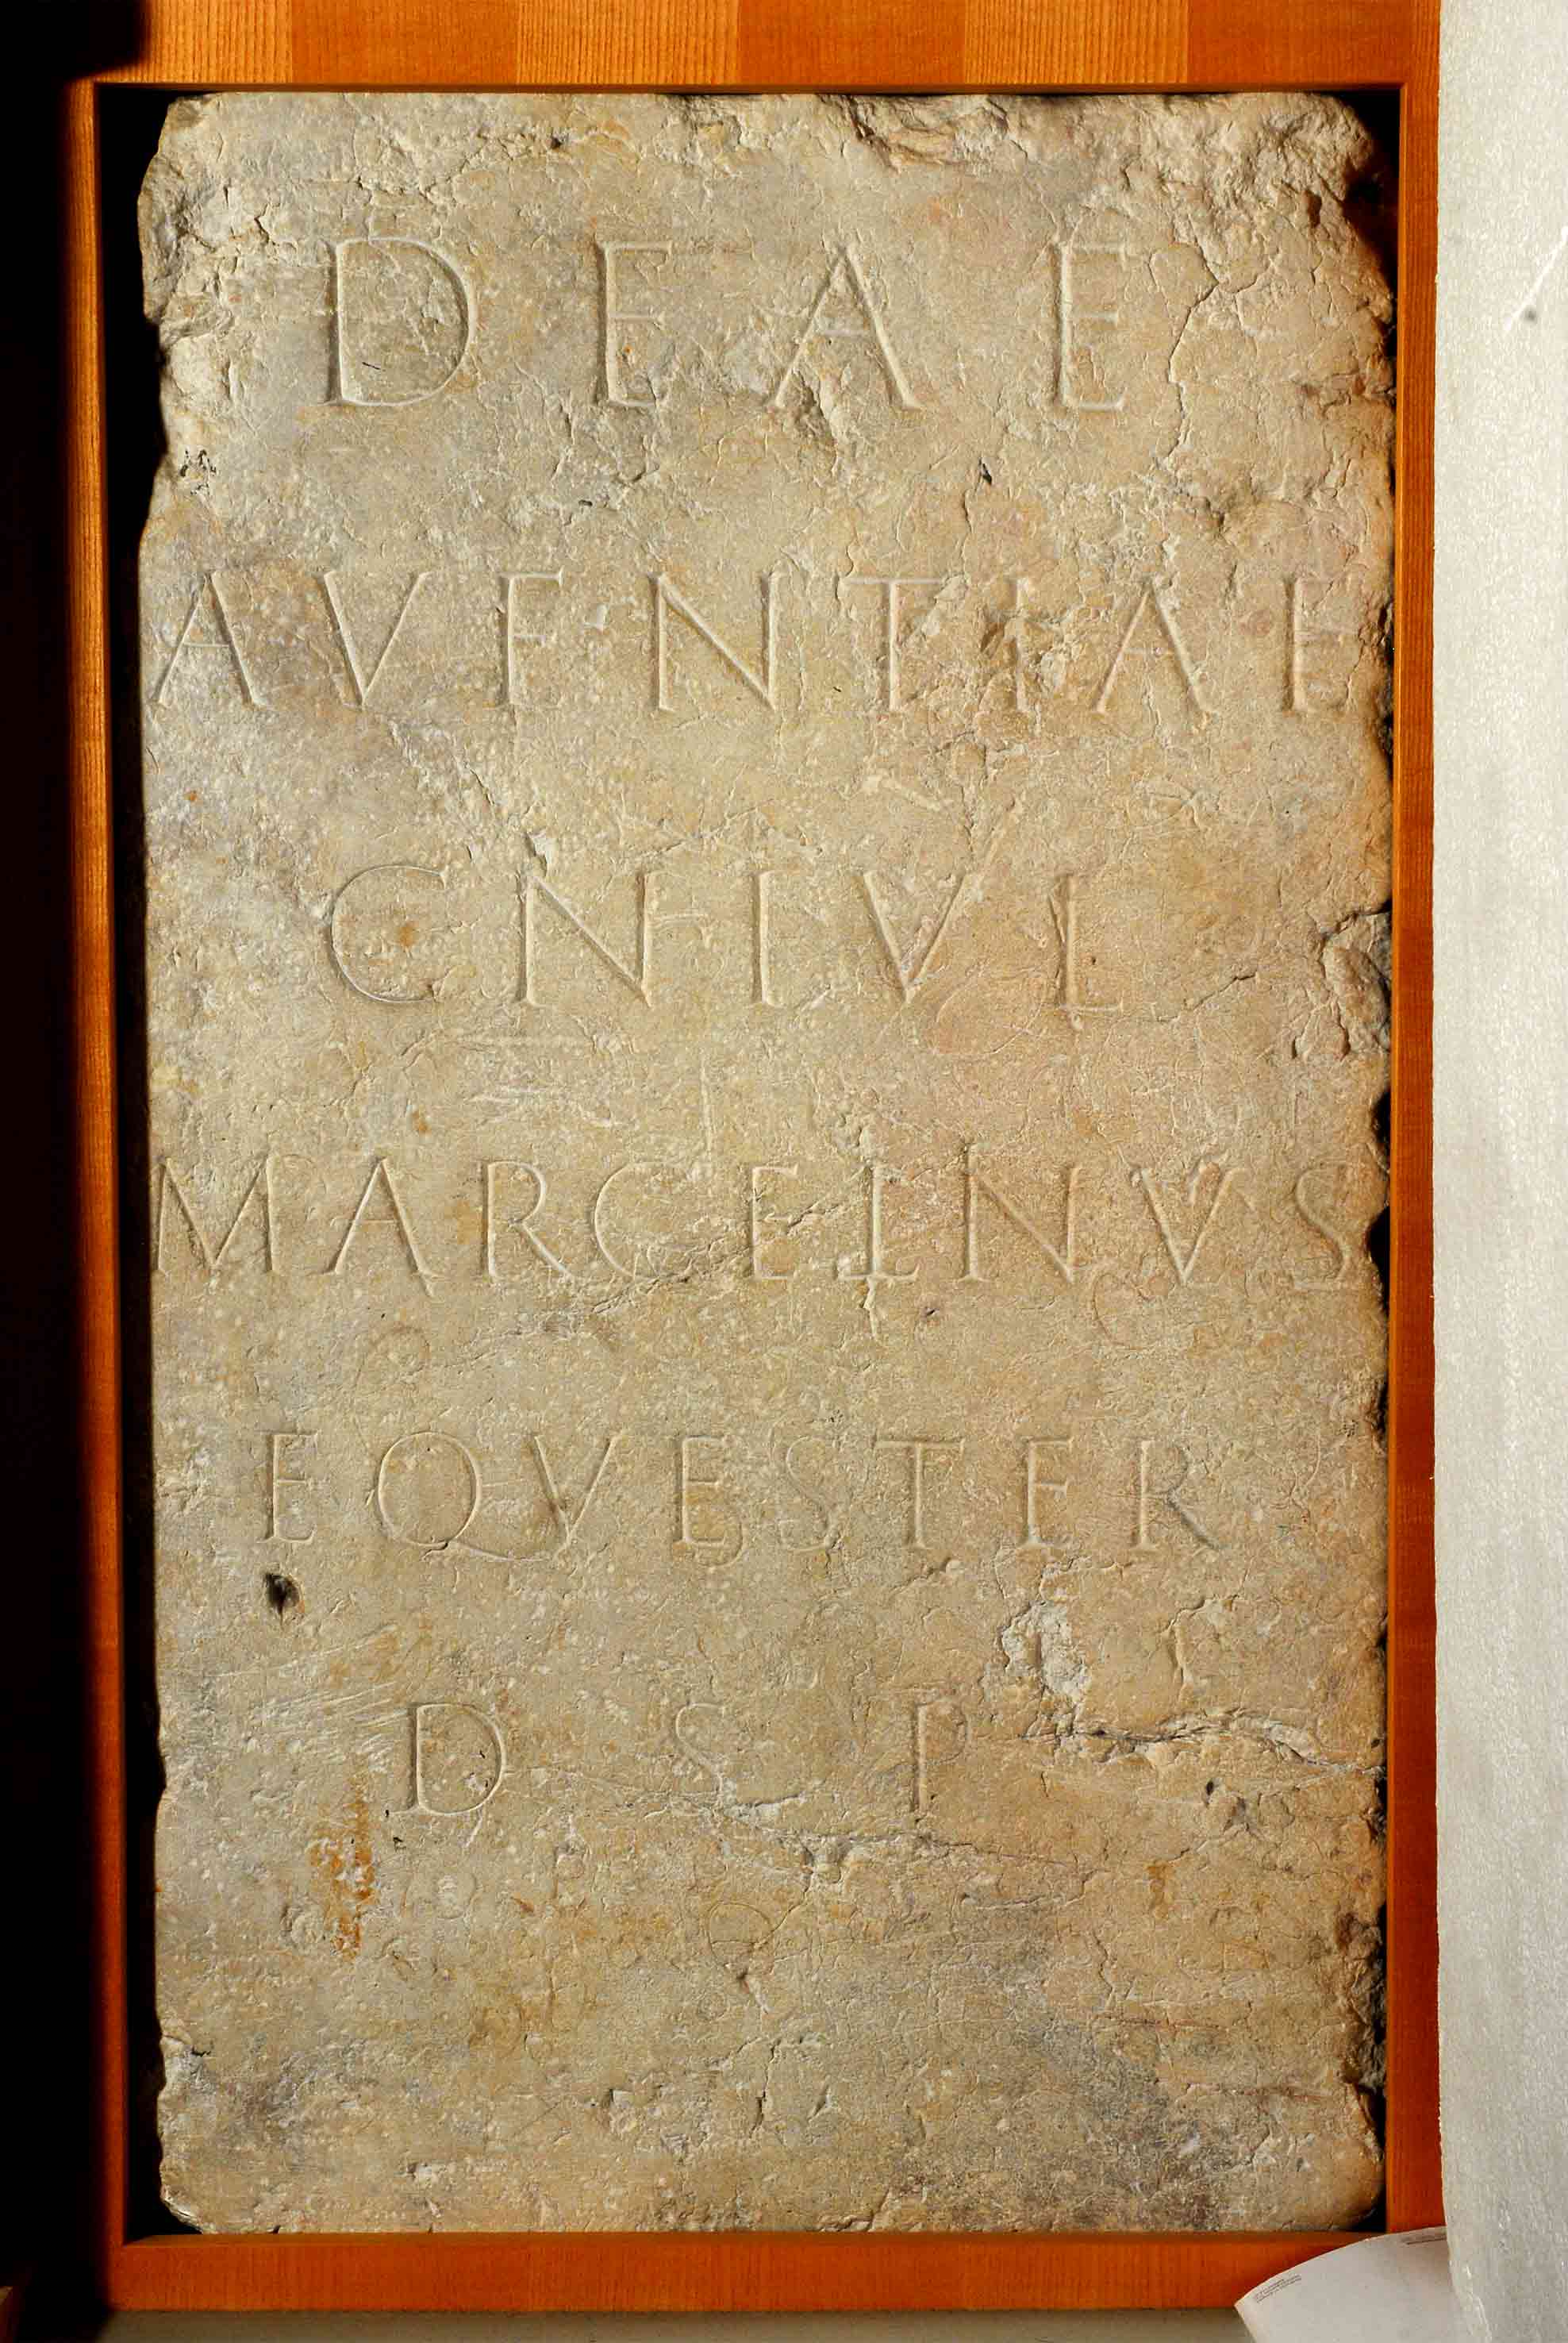 7.1 inscription Aventia